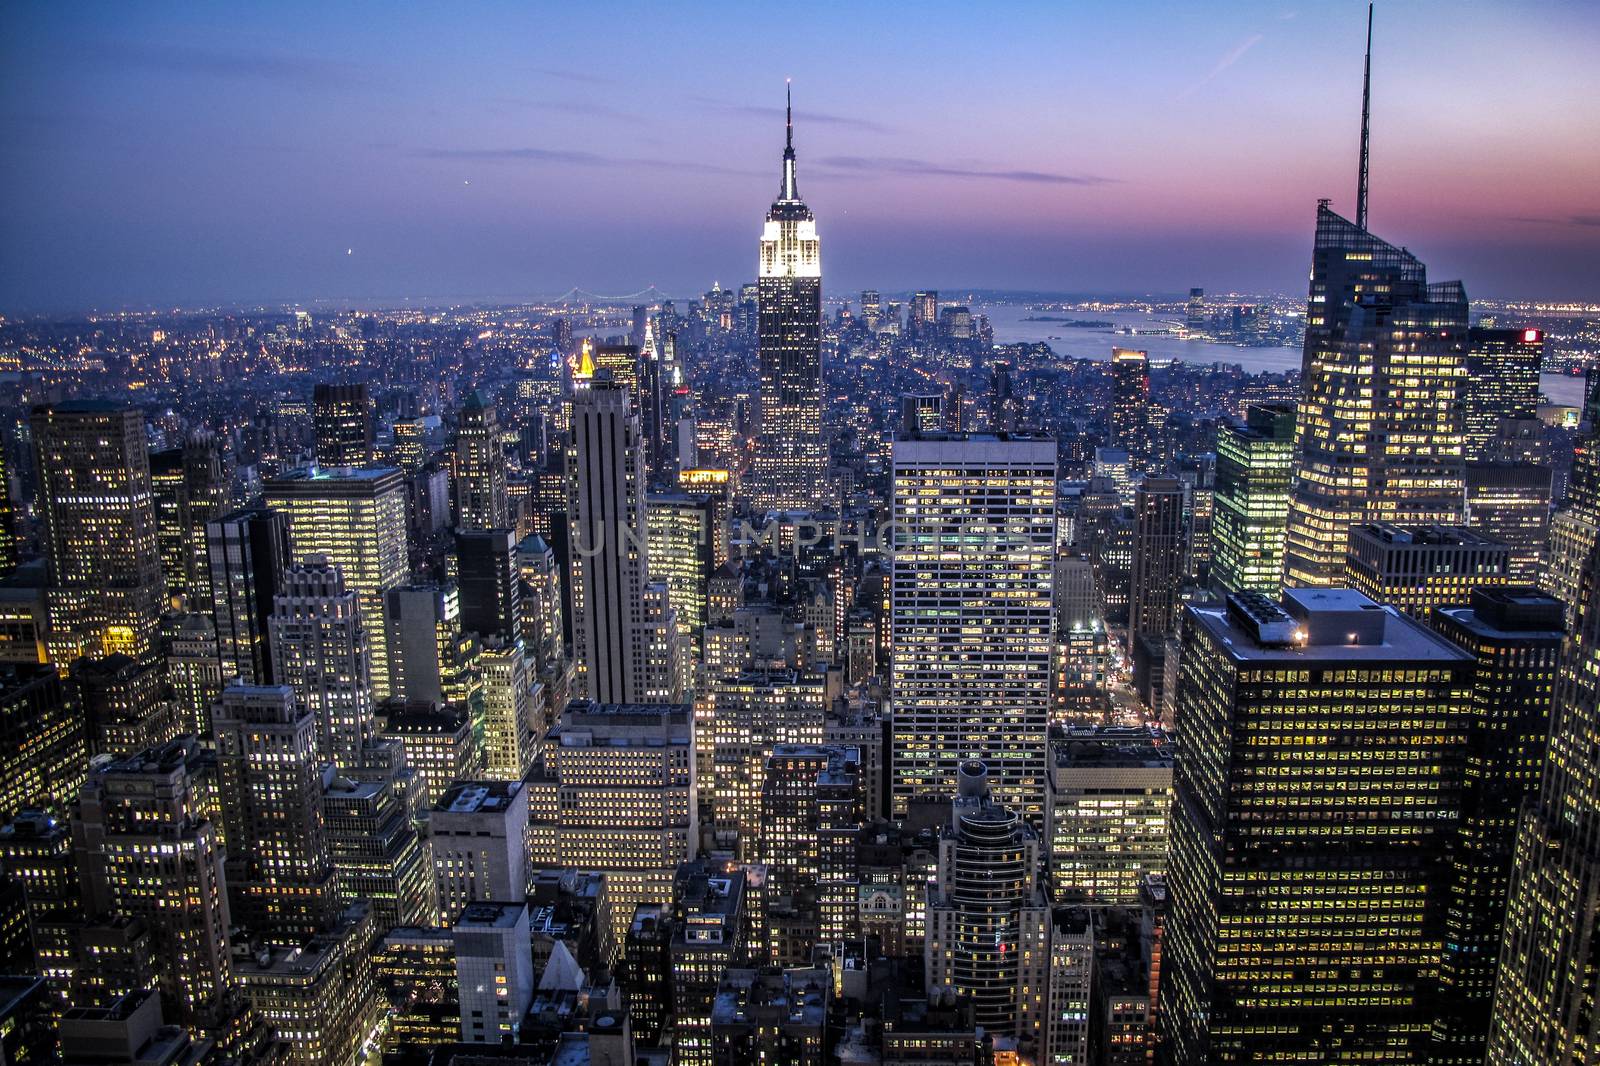 New York City Skyline during Sunset or Dusk